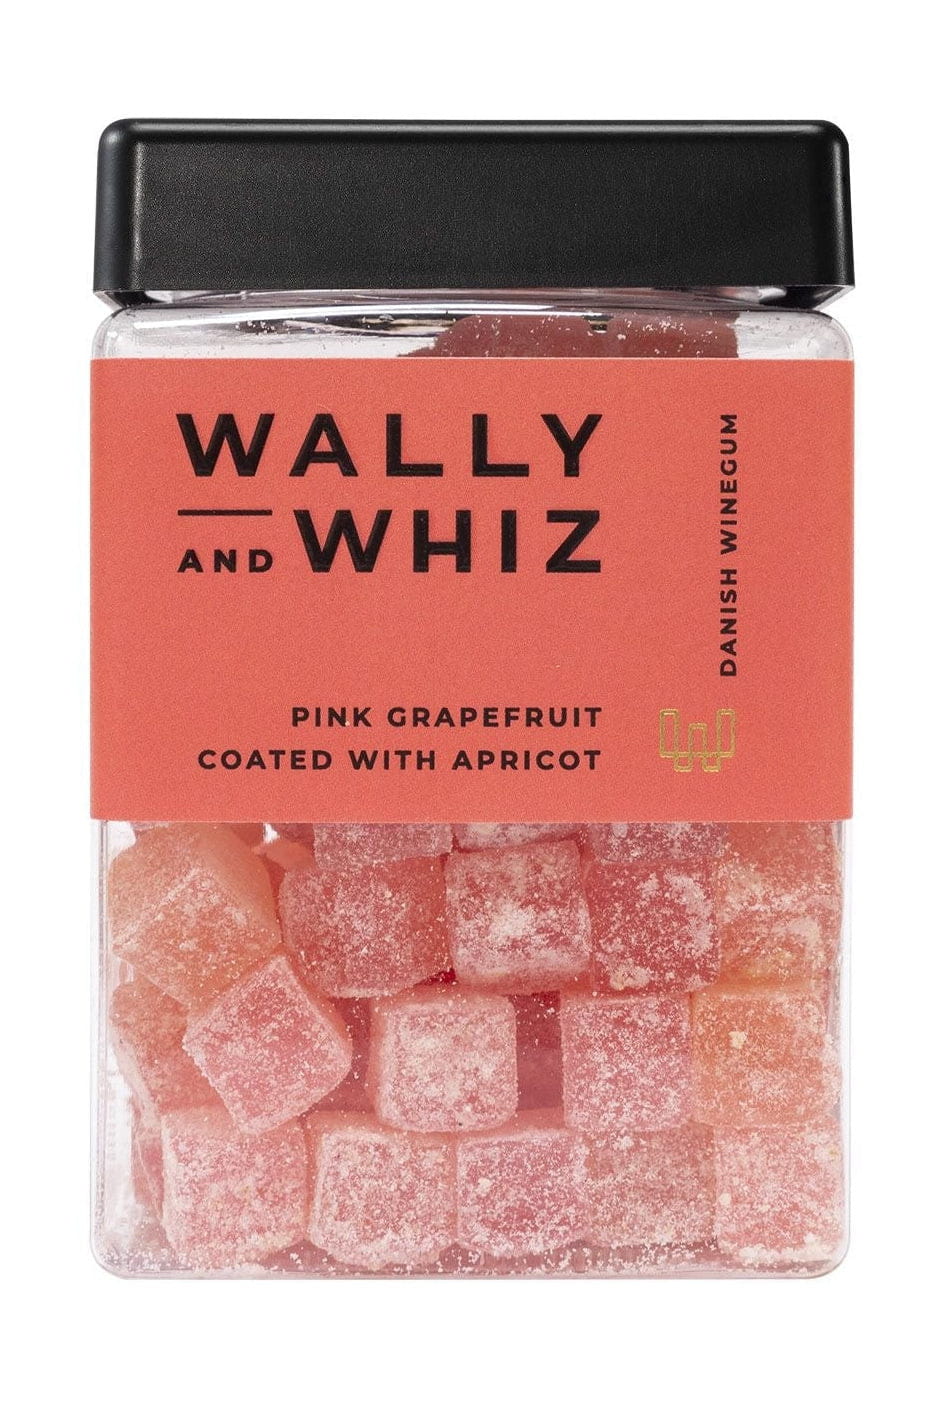 Kostka gumowa Wally i Whiz Wine, różowy grejpfrut z morelami, 240g